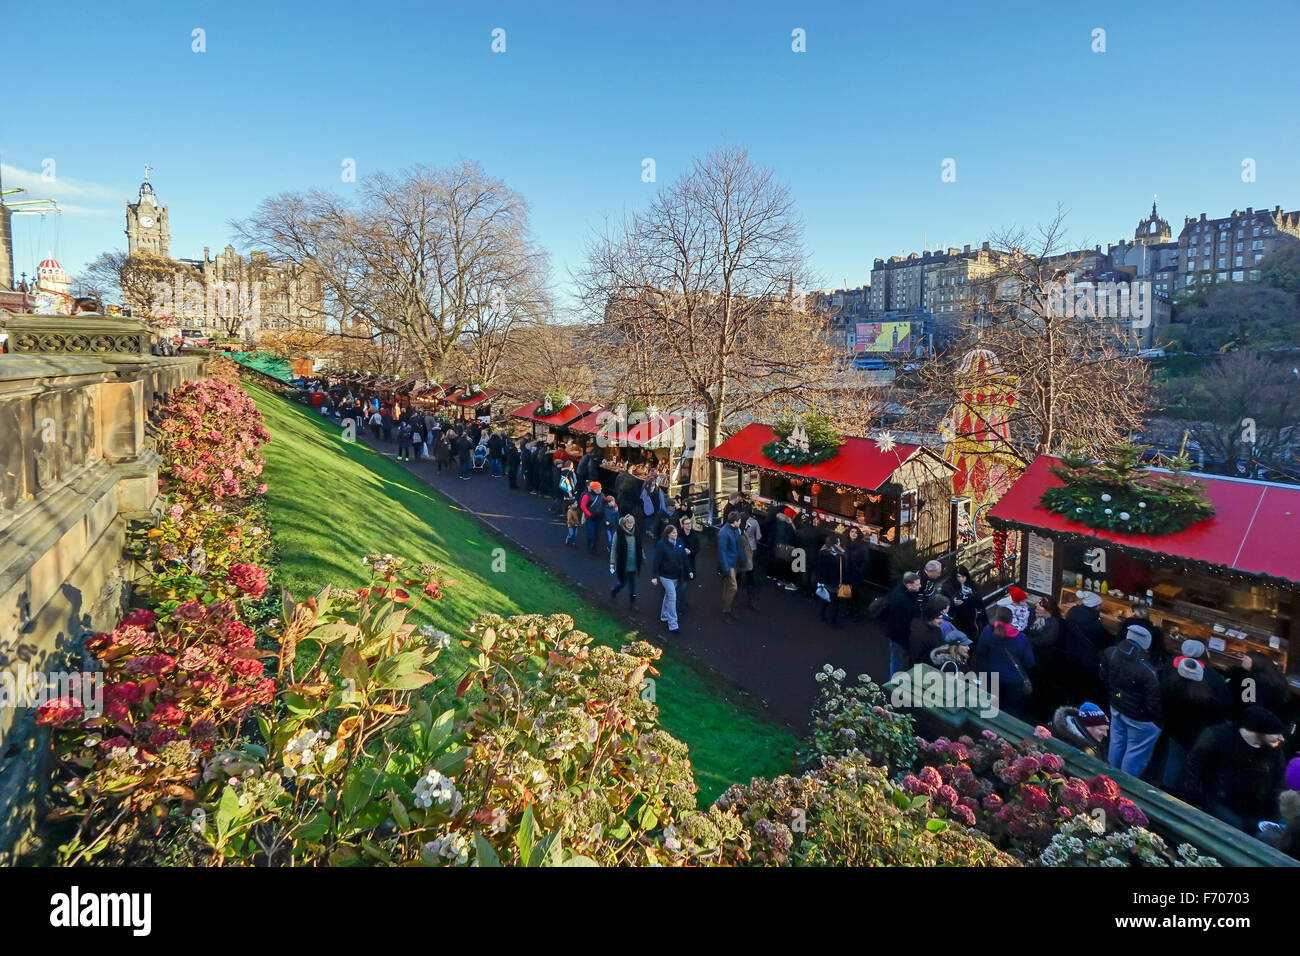 Mercado de Navidad de Edimburgo 2015 en el este de Princes Gardens Edinburgh con puestos de venta de productos y Alimentos & Bebidas Foto de stock